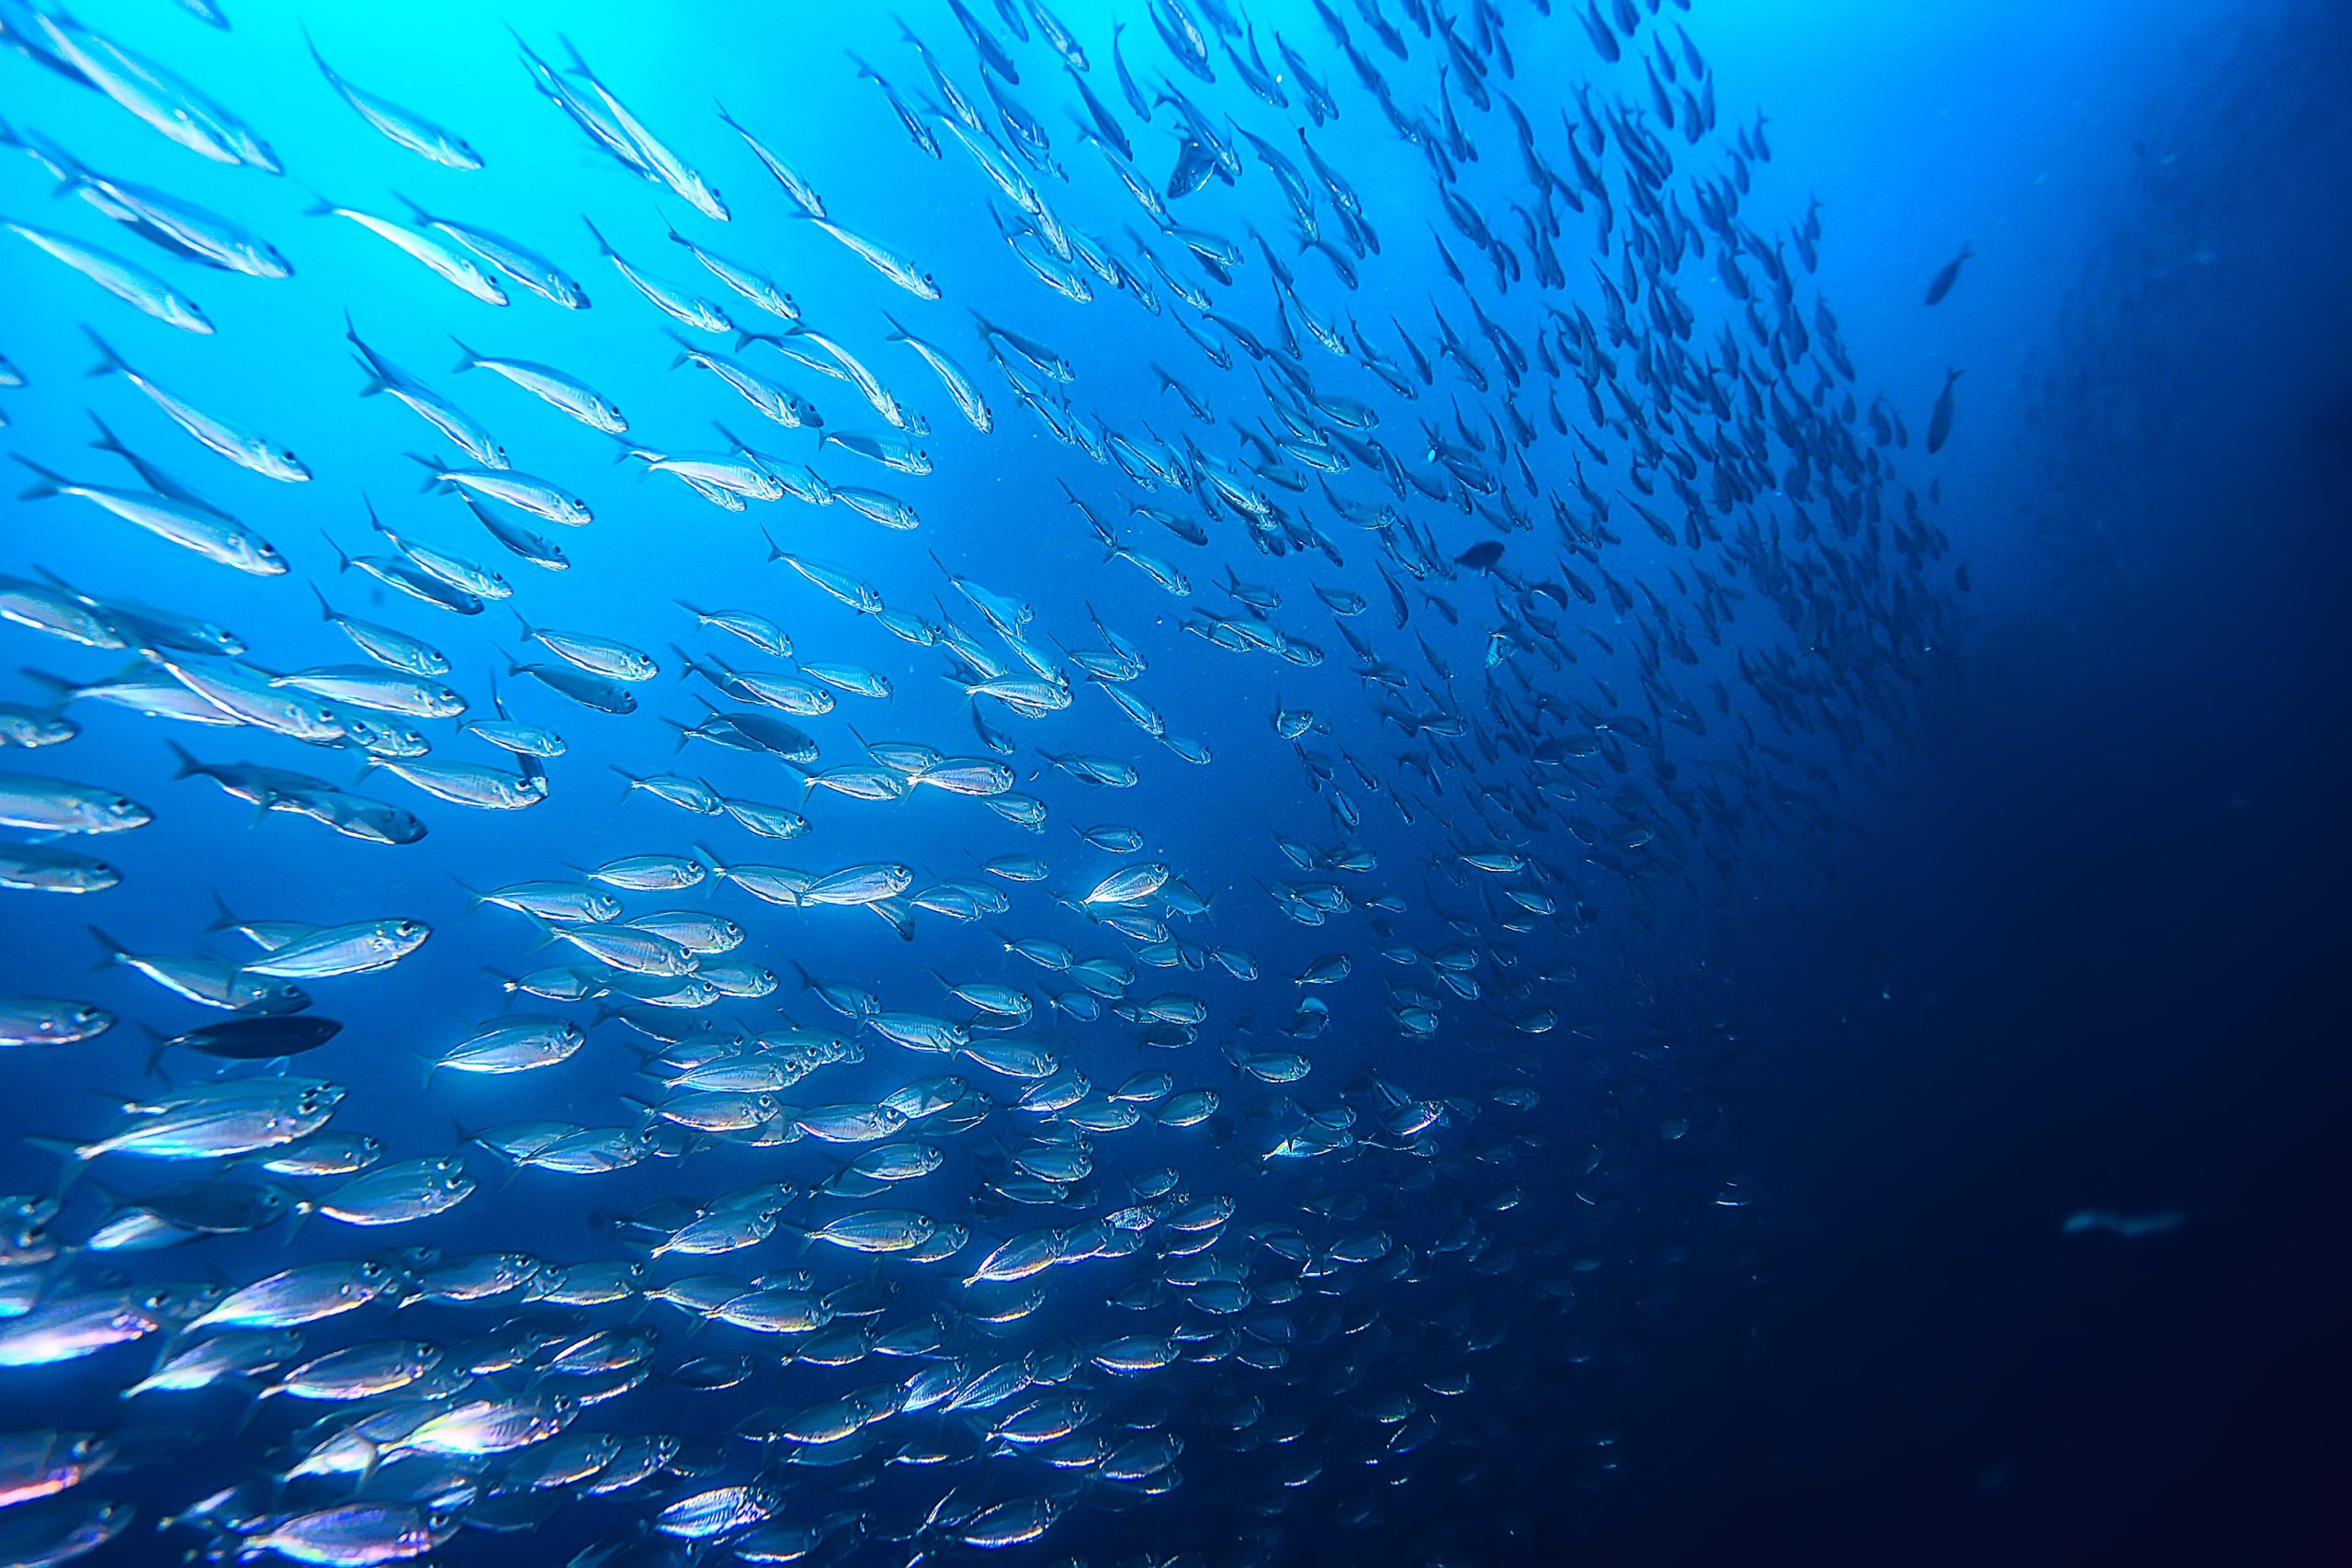 الأسماك البحرية تستجيب لتغير المناخ بالانتقال نحو القطبين | إنفيروتيك